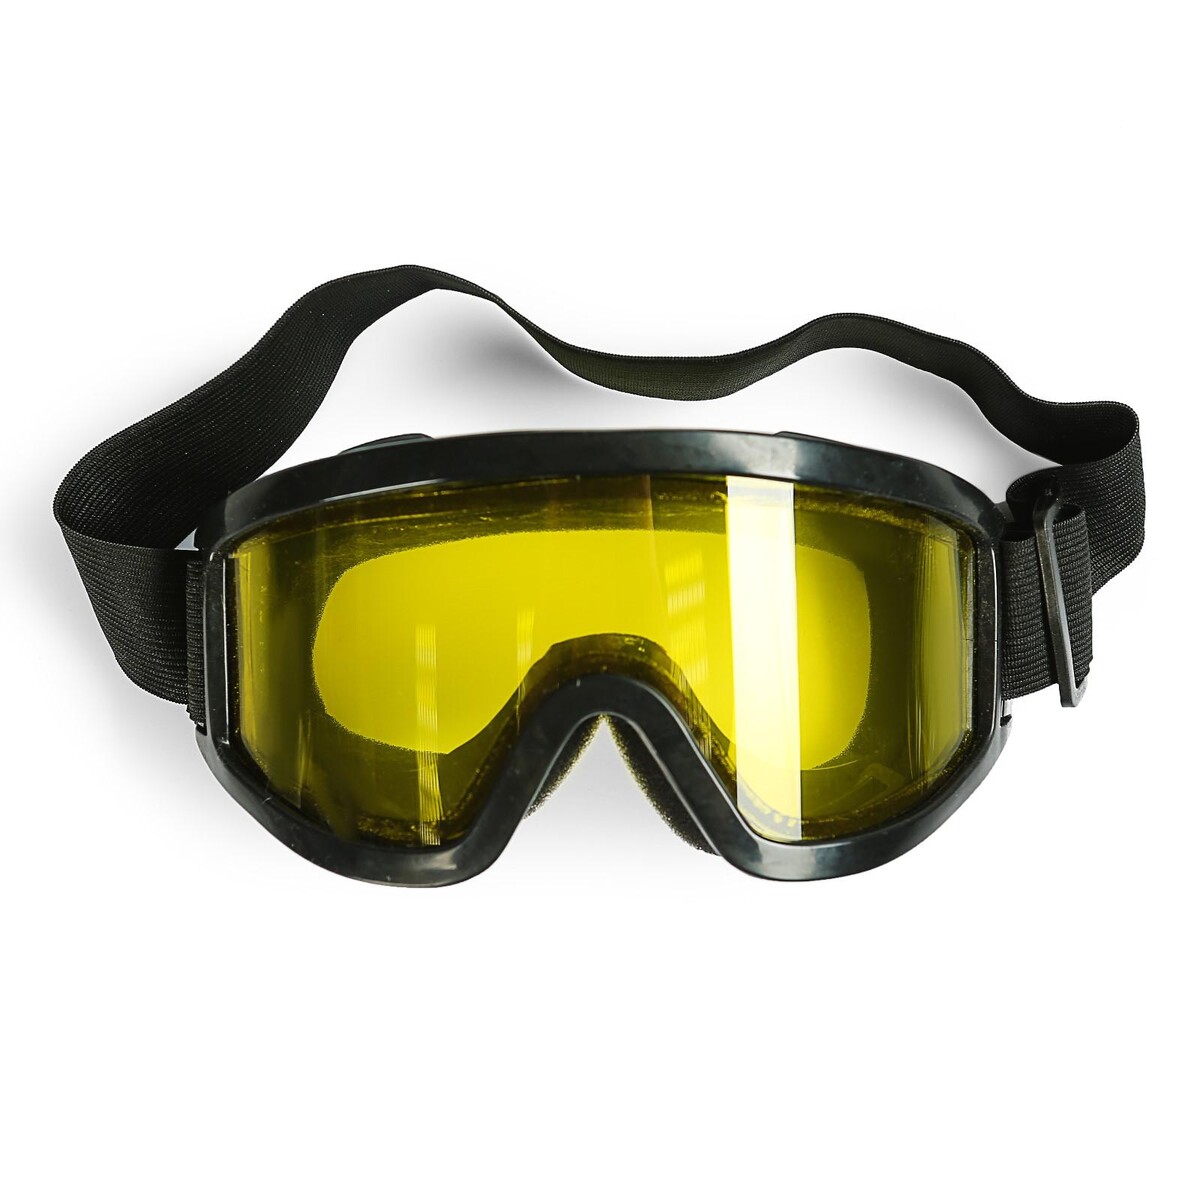 Очки-маска для езды на мототехнике, стекло двухслойное желтое, цвет черный маска под лицом роман